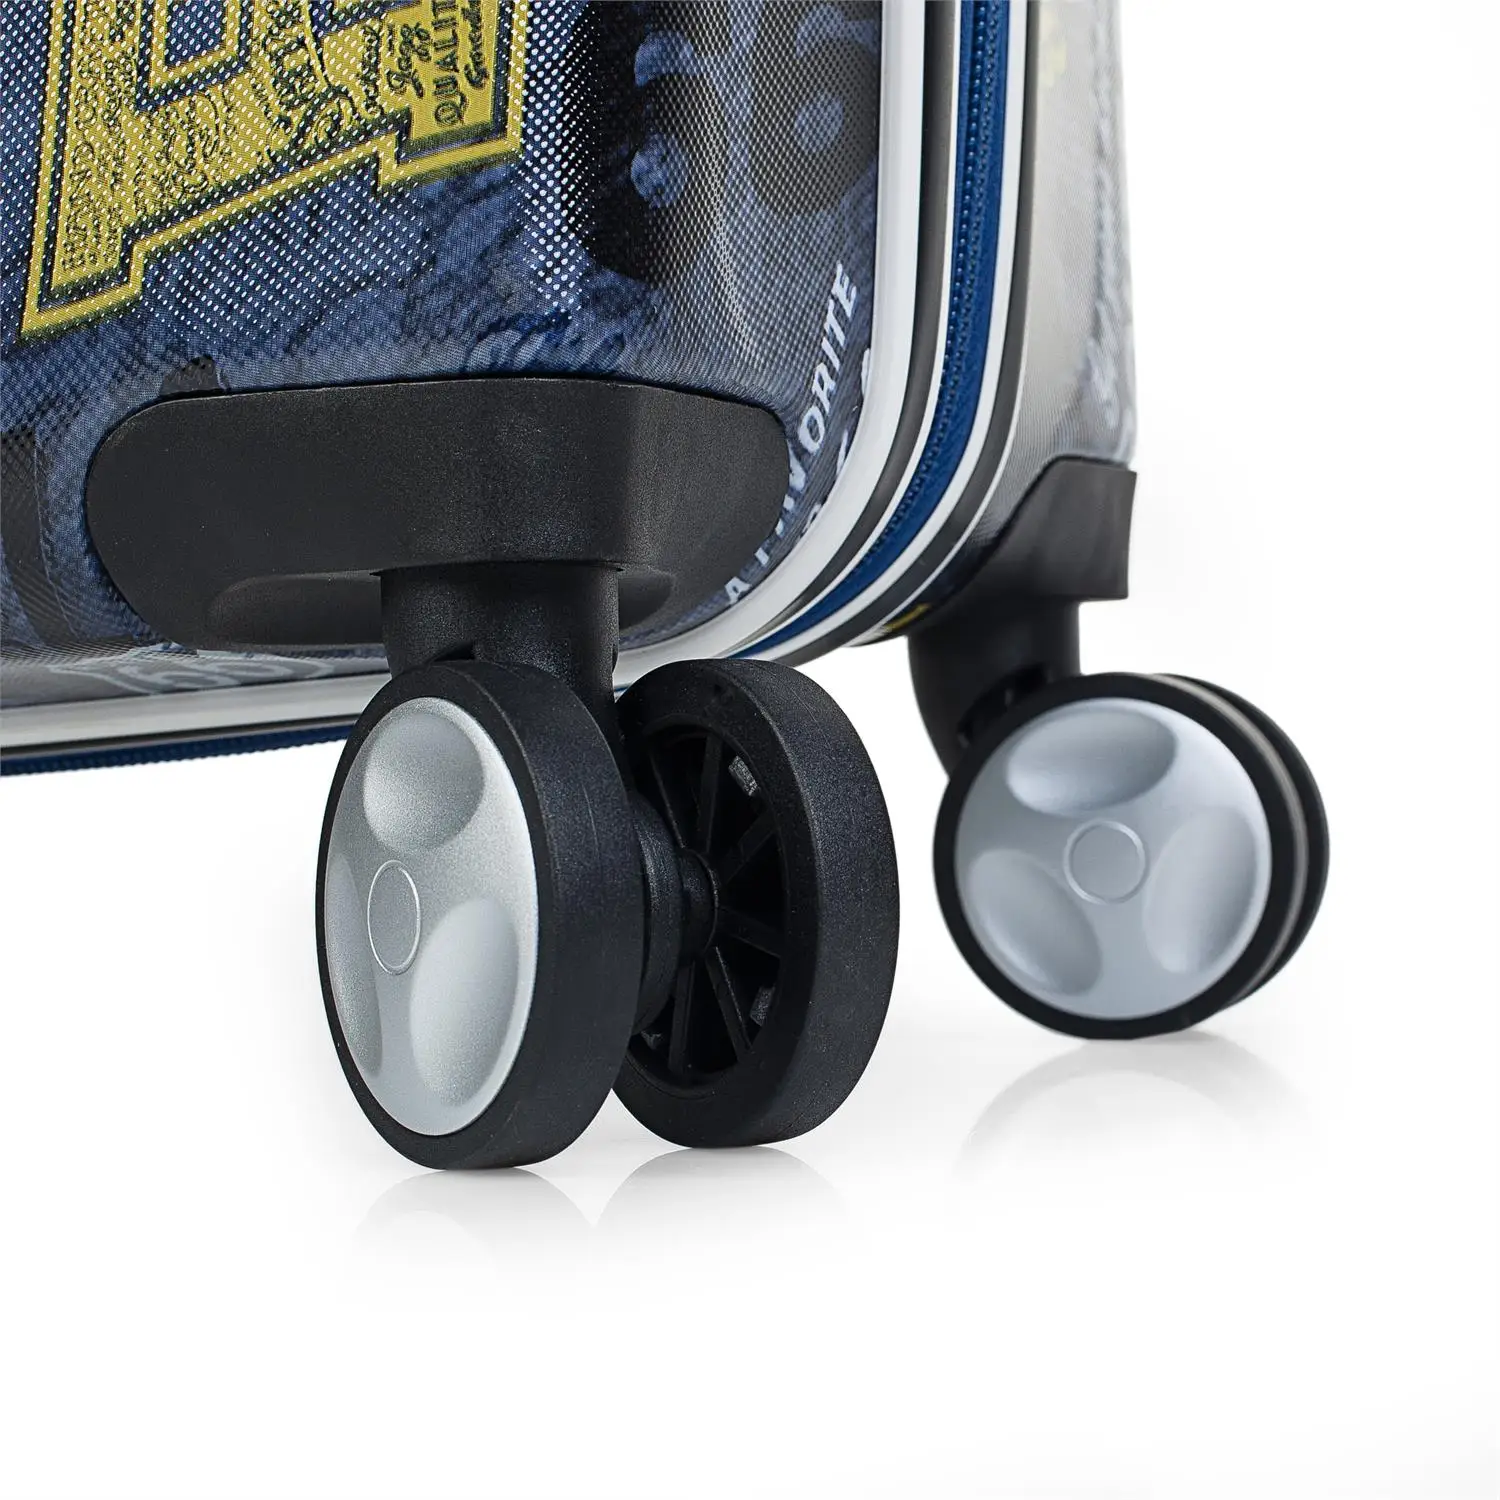 Route 66 модель Philadelphia набор 2 чемодана на колесиках 50/60 см ABS принт Rigidas цвет черный R611